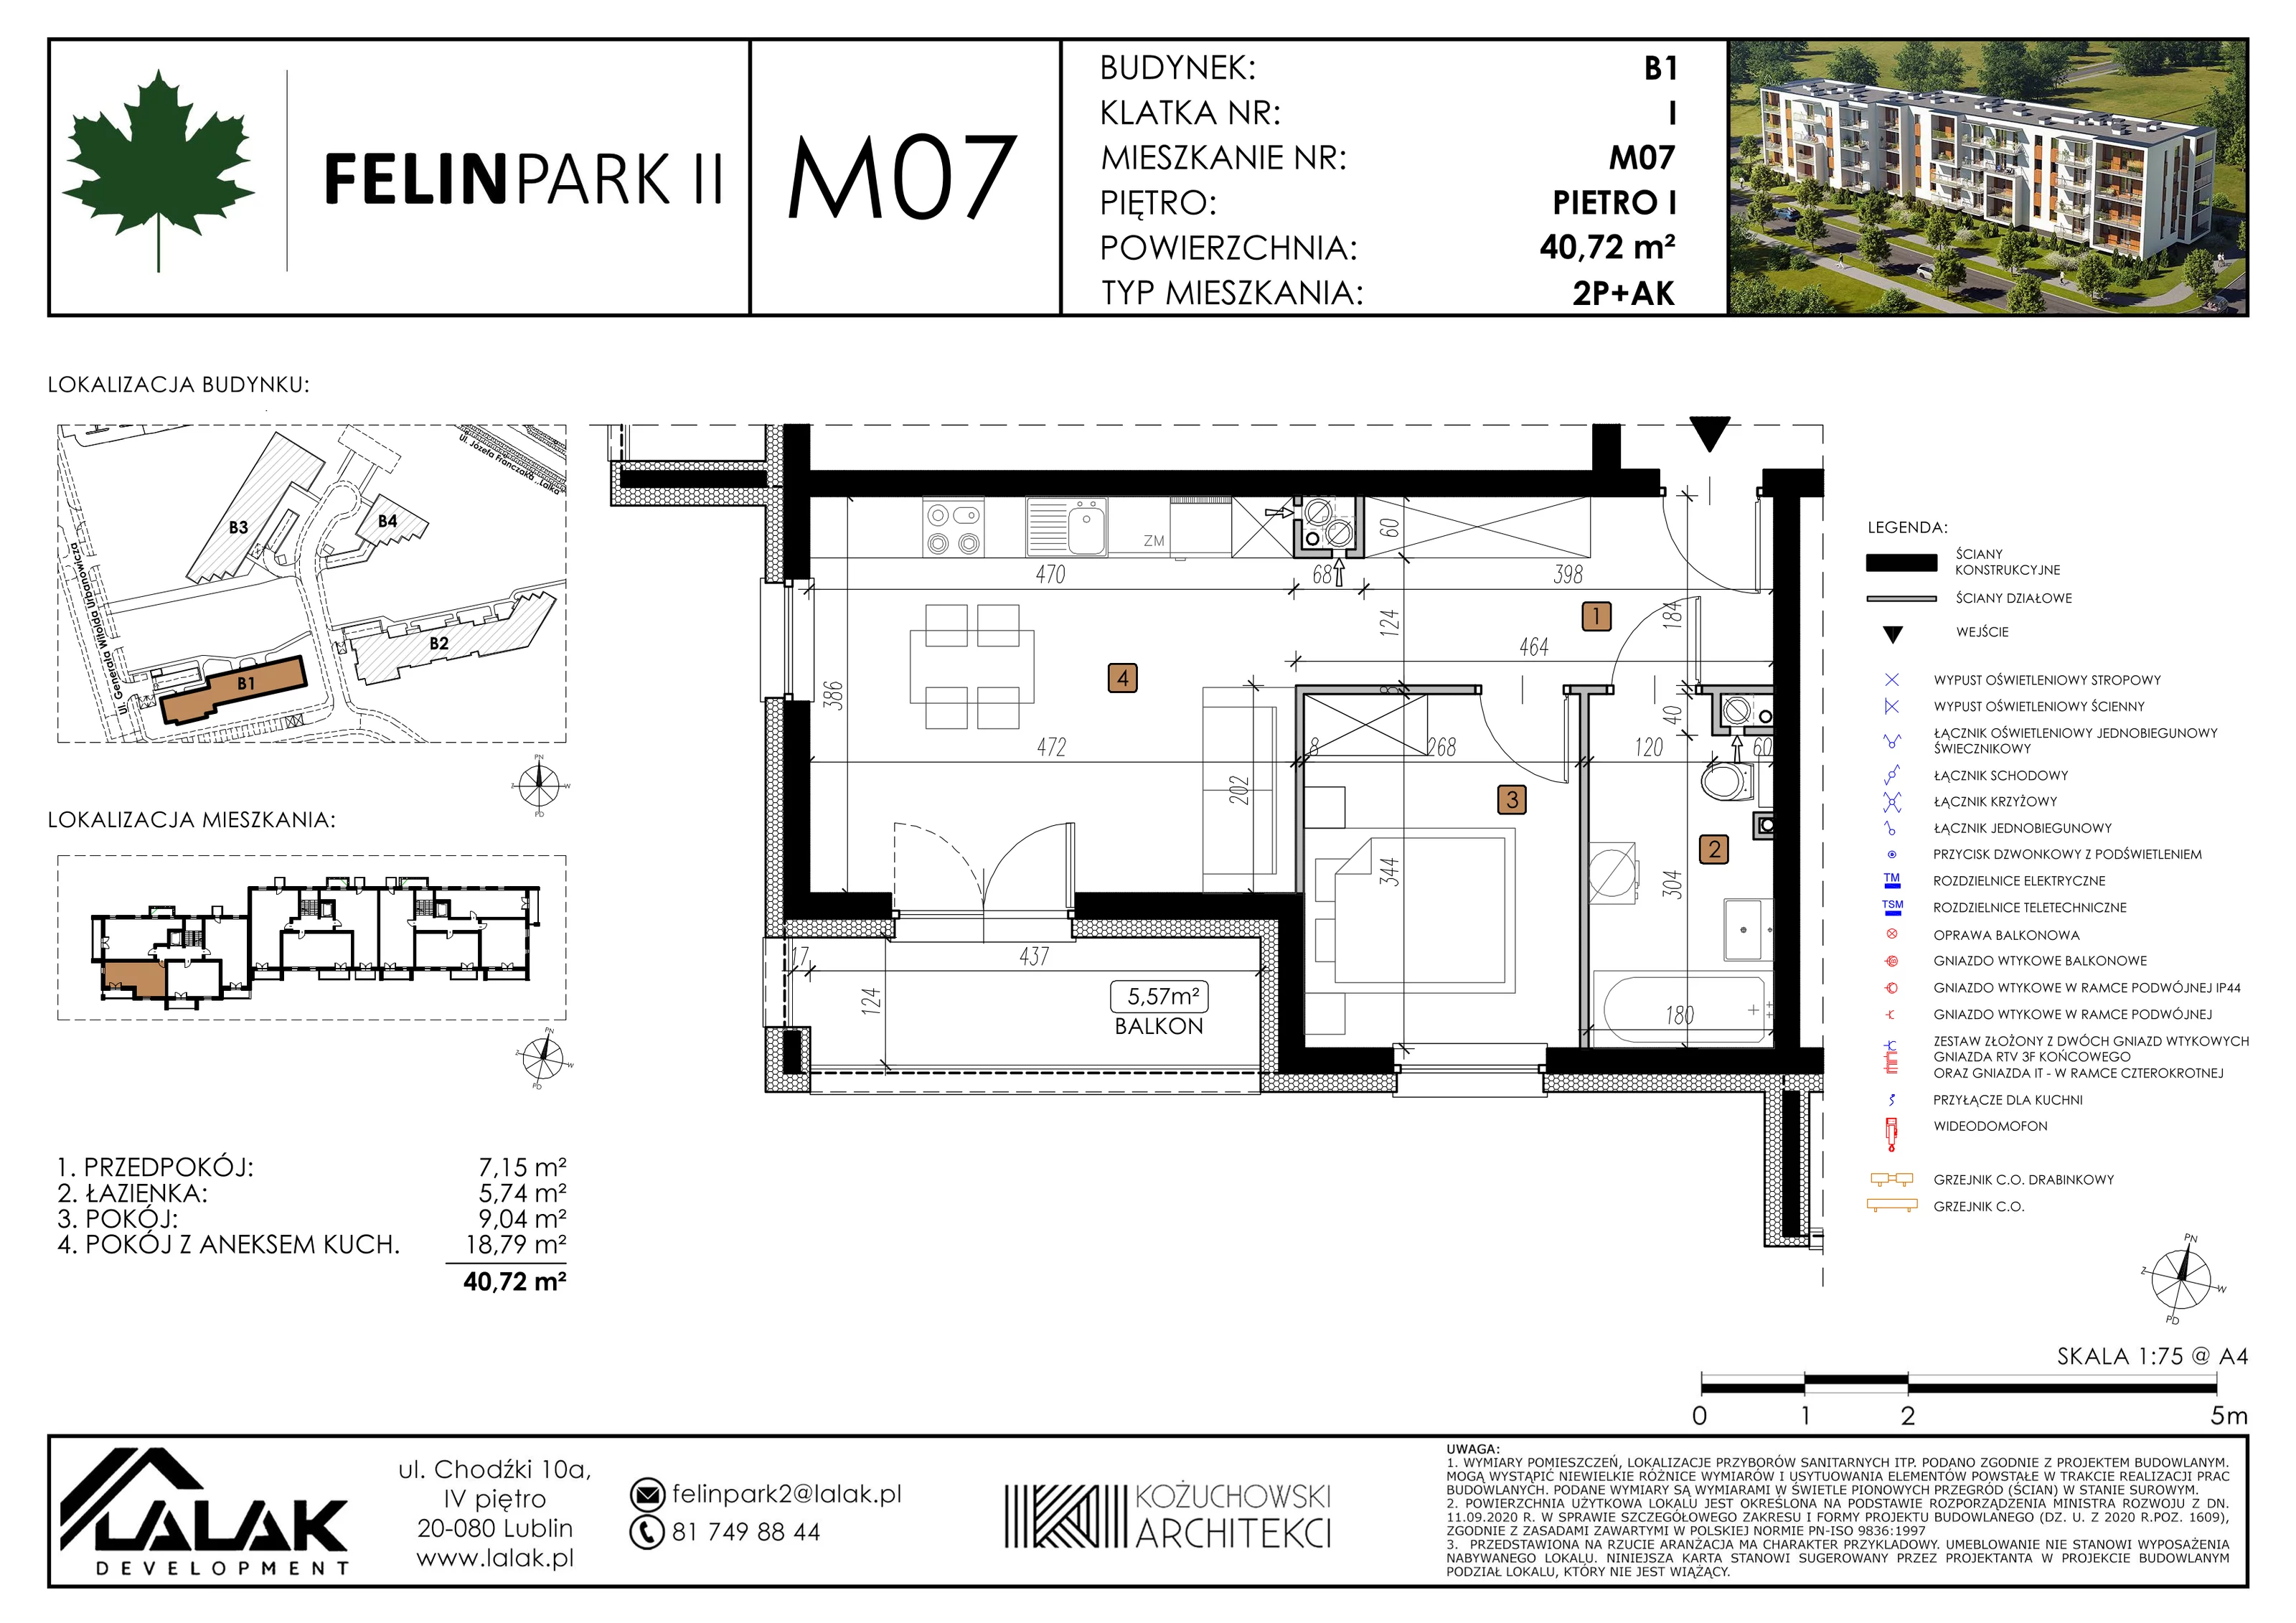 Mieszkanie 40,78 m², piętro 1, oferta nr B1_M7/I, Felin Park II, Lublin, Felin, ul. gen. Stanisława Skalskiego 8-10